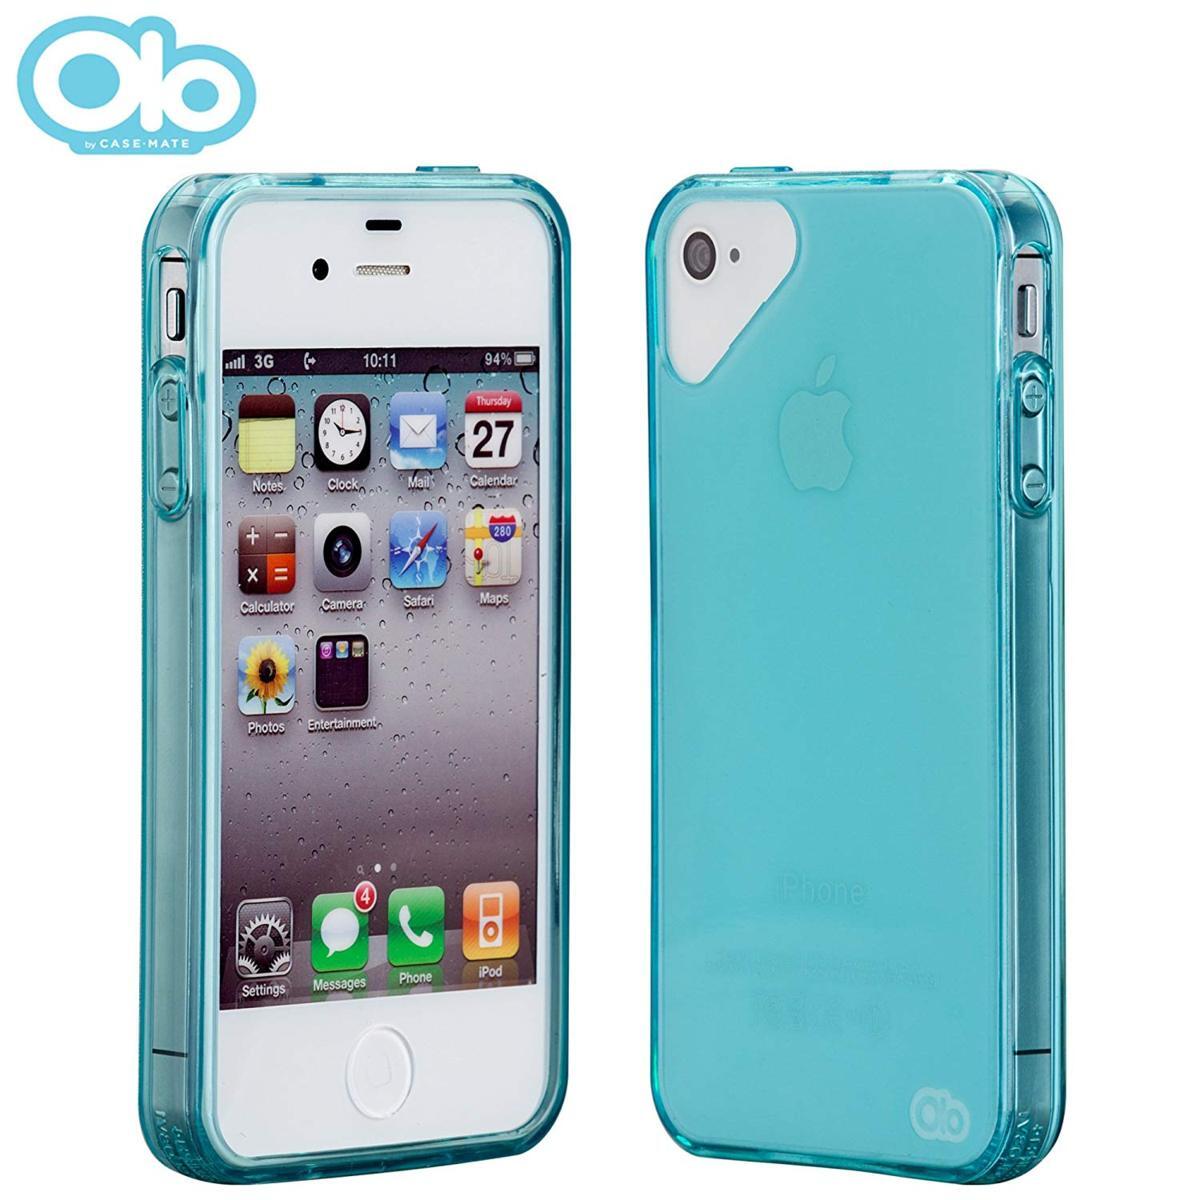 即決・送料無料)【シンプルなソフトケース】Olo iPhone 4S/4 Glacier Case Crystal Blue_画像1